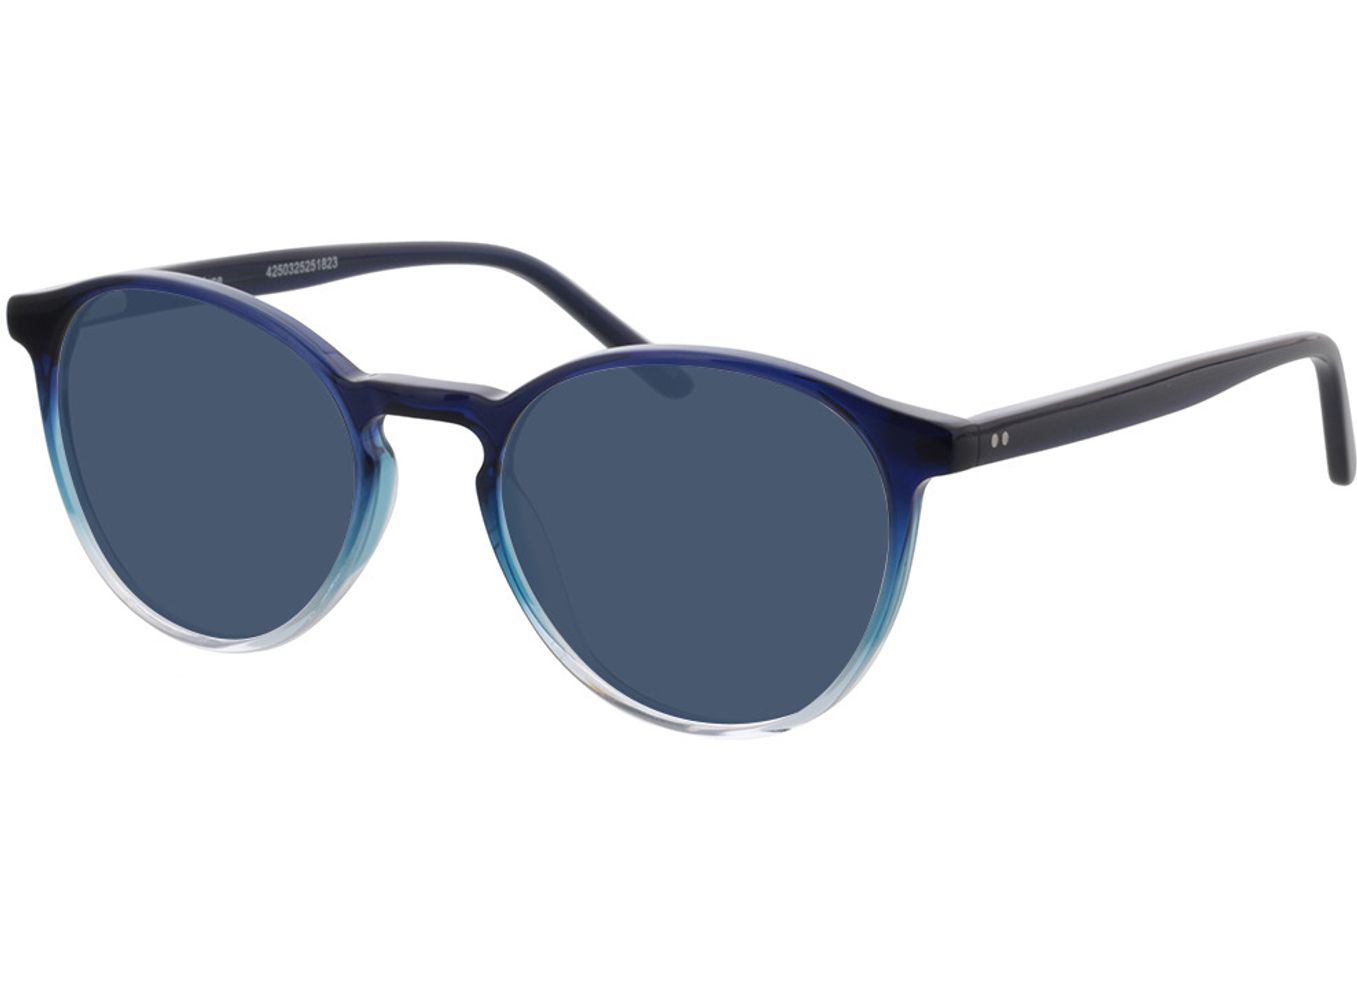 June - blau/transparent Sonnenbrille ohne Sehstärke, Vollrand, Rund von Brille24 Collection